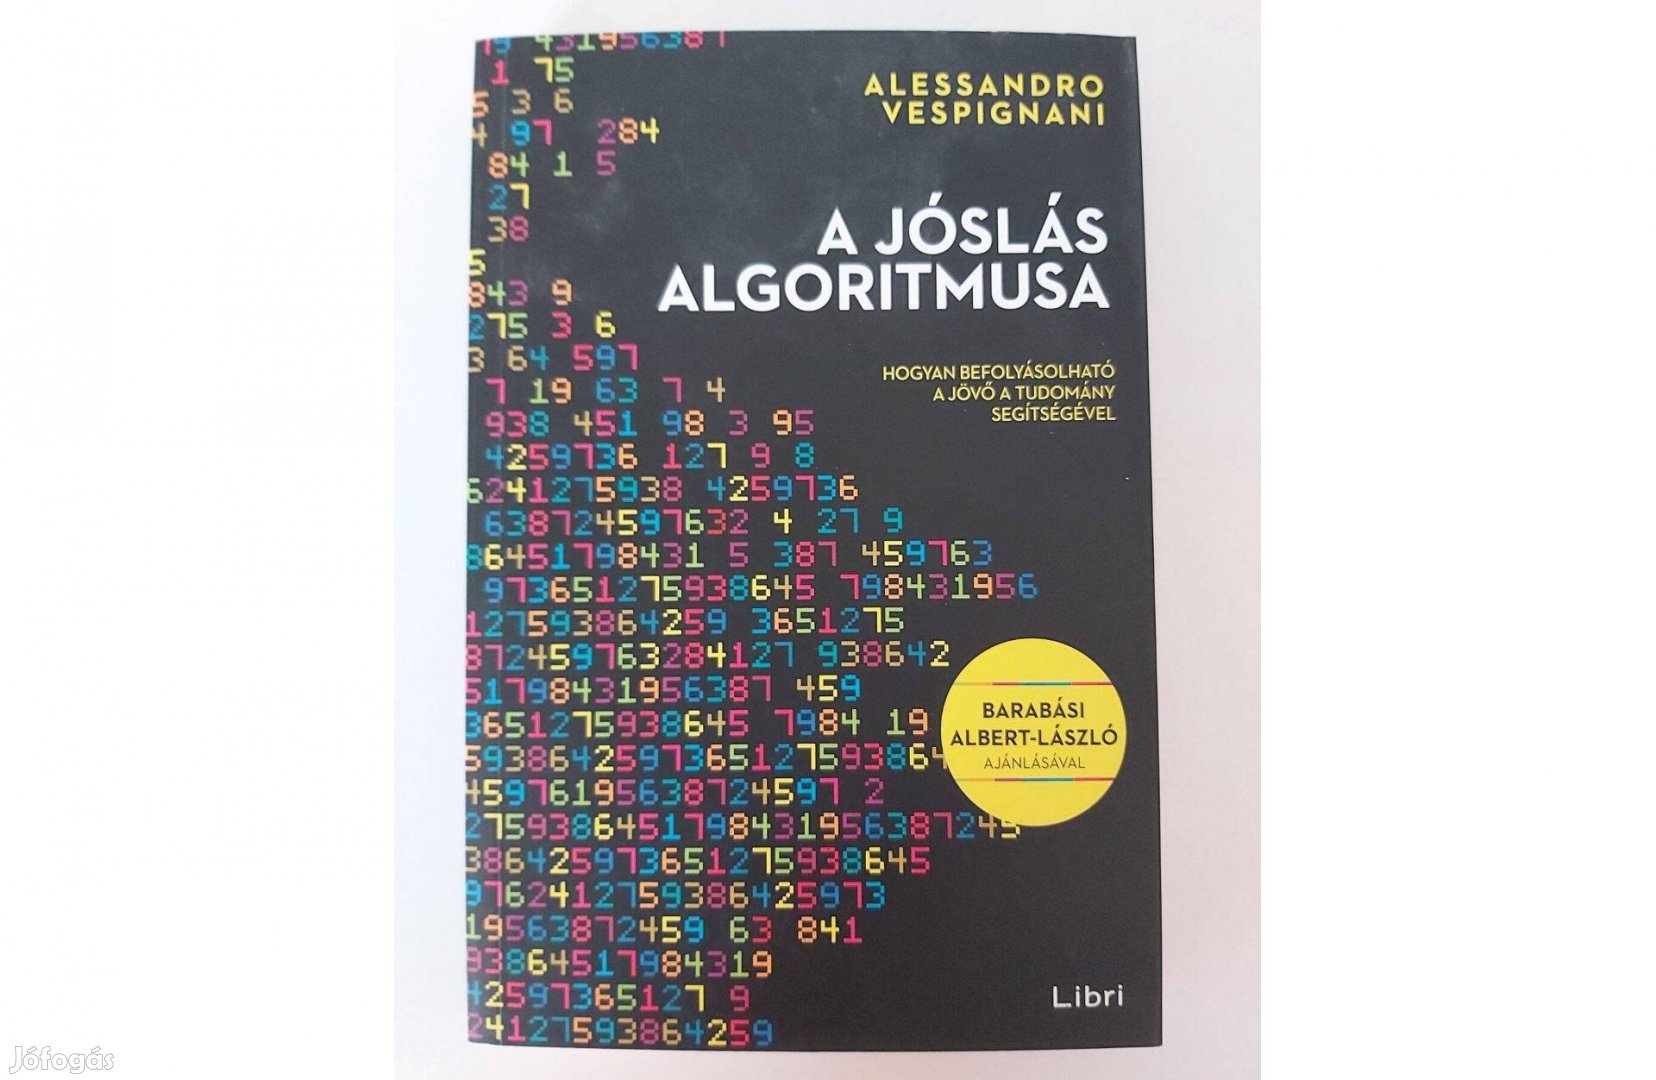 Alessandro Vespignani: A jóslás algoritmusa